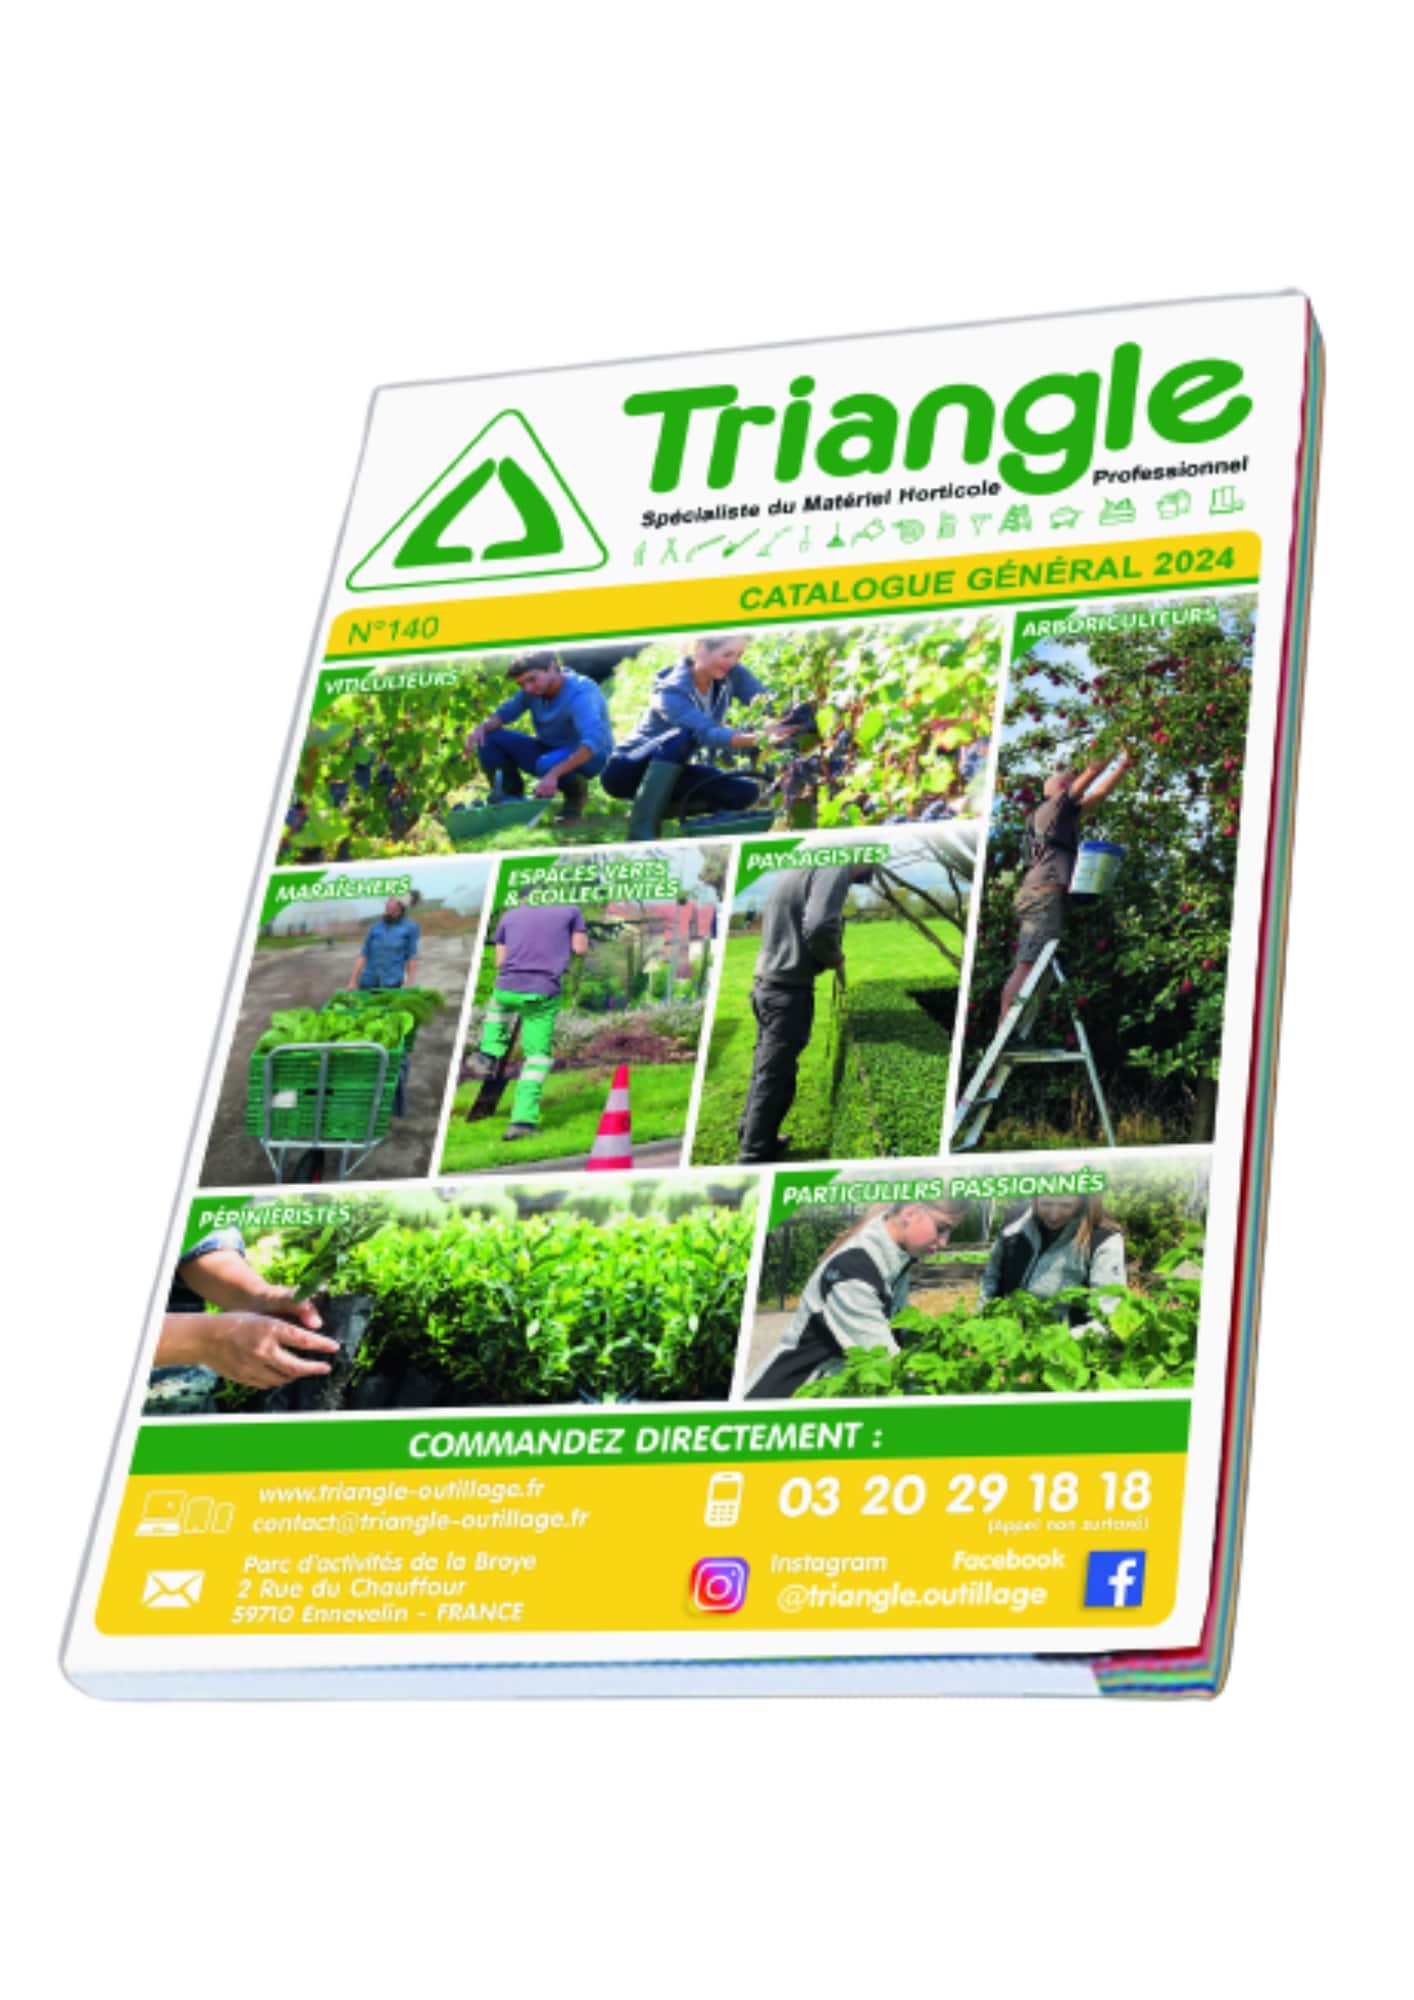 Triangle outillage.fr - Triangle le spécialiste du matériel Horticole Professionnel- Catalogue triangle-outillage